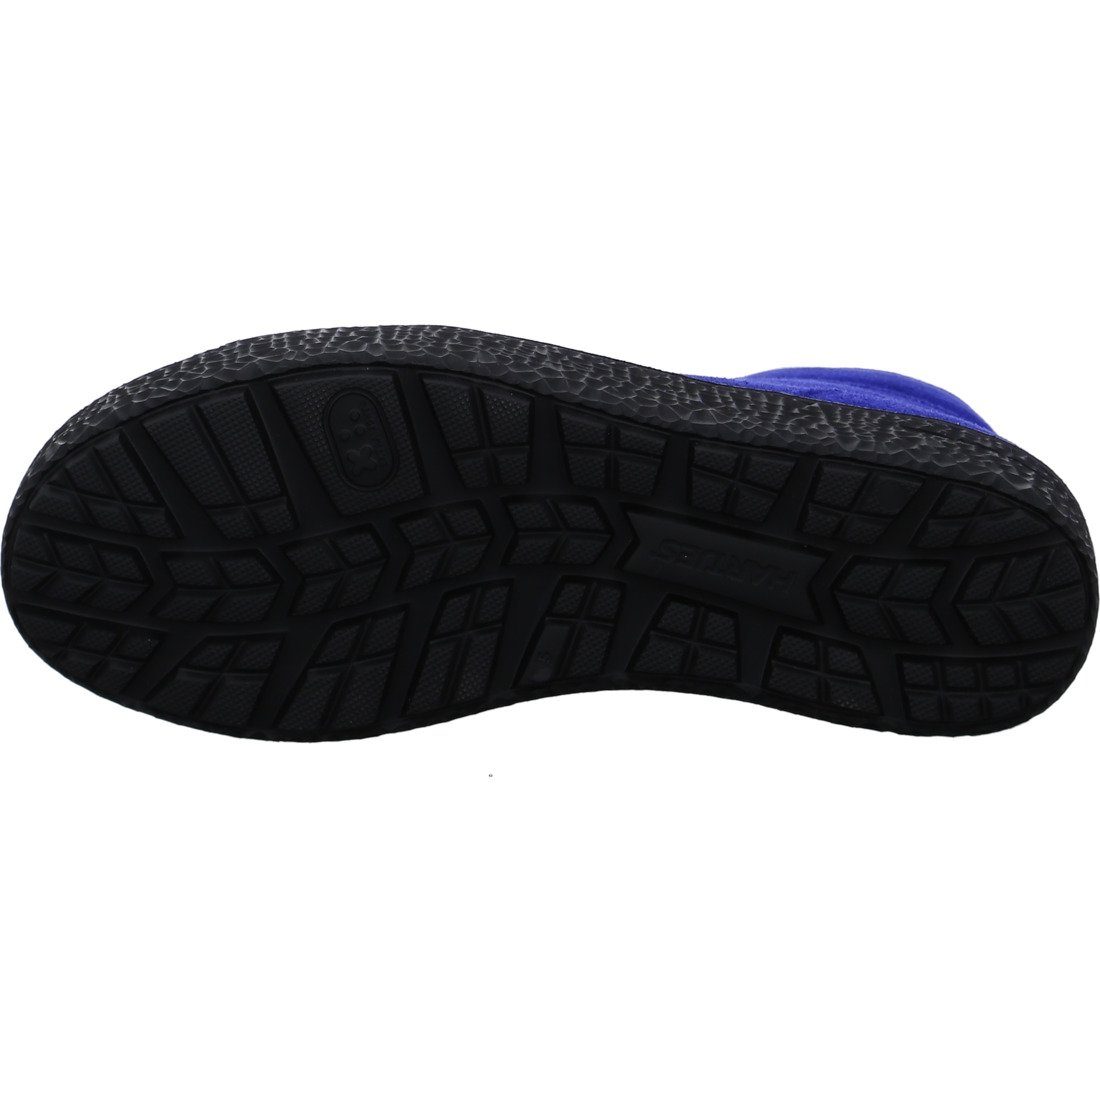 Phil Sneaker blau - Velours Schuhe, 047466 Sneaker Damen Hartjes Hartjes